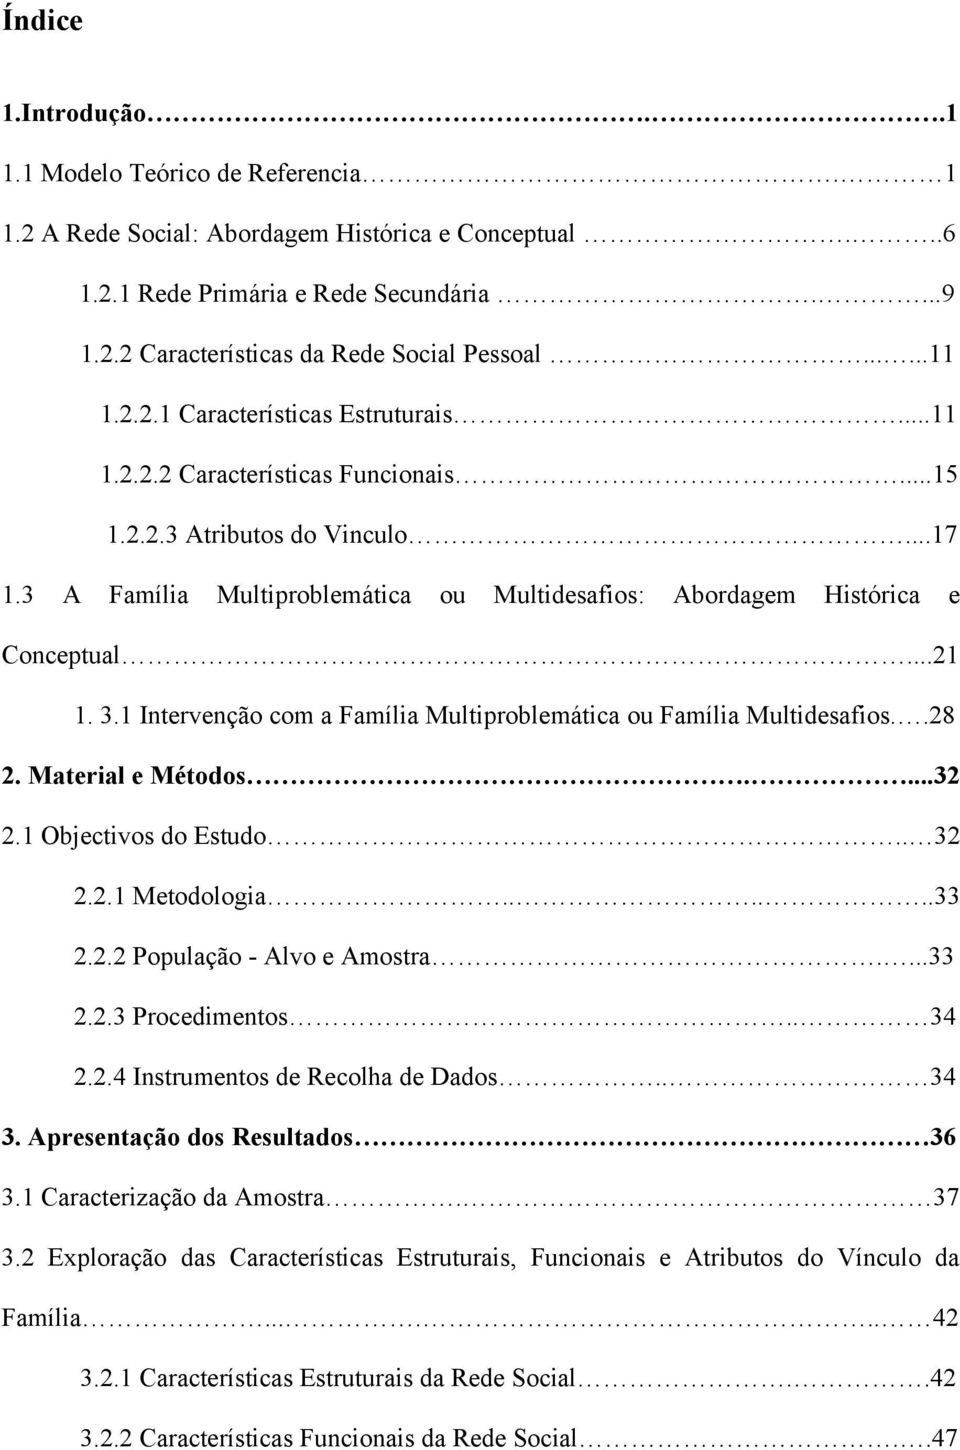 3 A Família Multiproblemática ou Multidesafios: Abordagem Histórica e Conceptual...21 1. 3.1 Intervenção com a Família Multiproblemática ou Família Multidesafios..28 2. Material e Métodos....32 2.